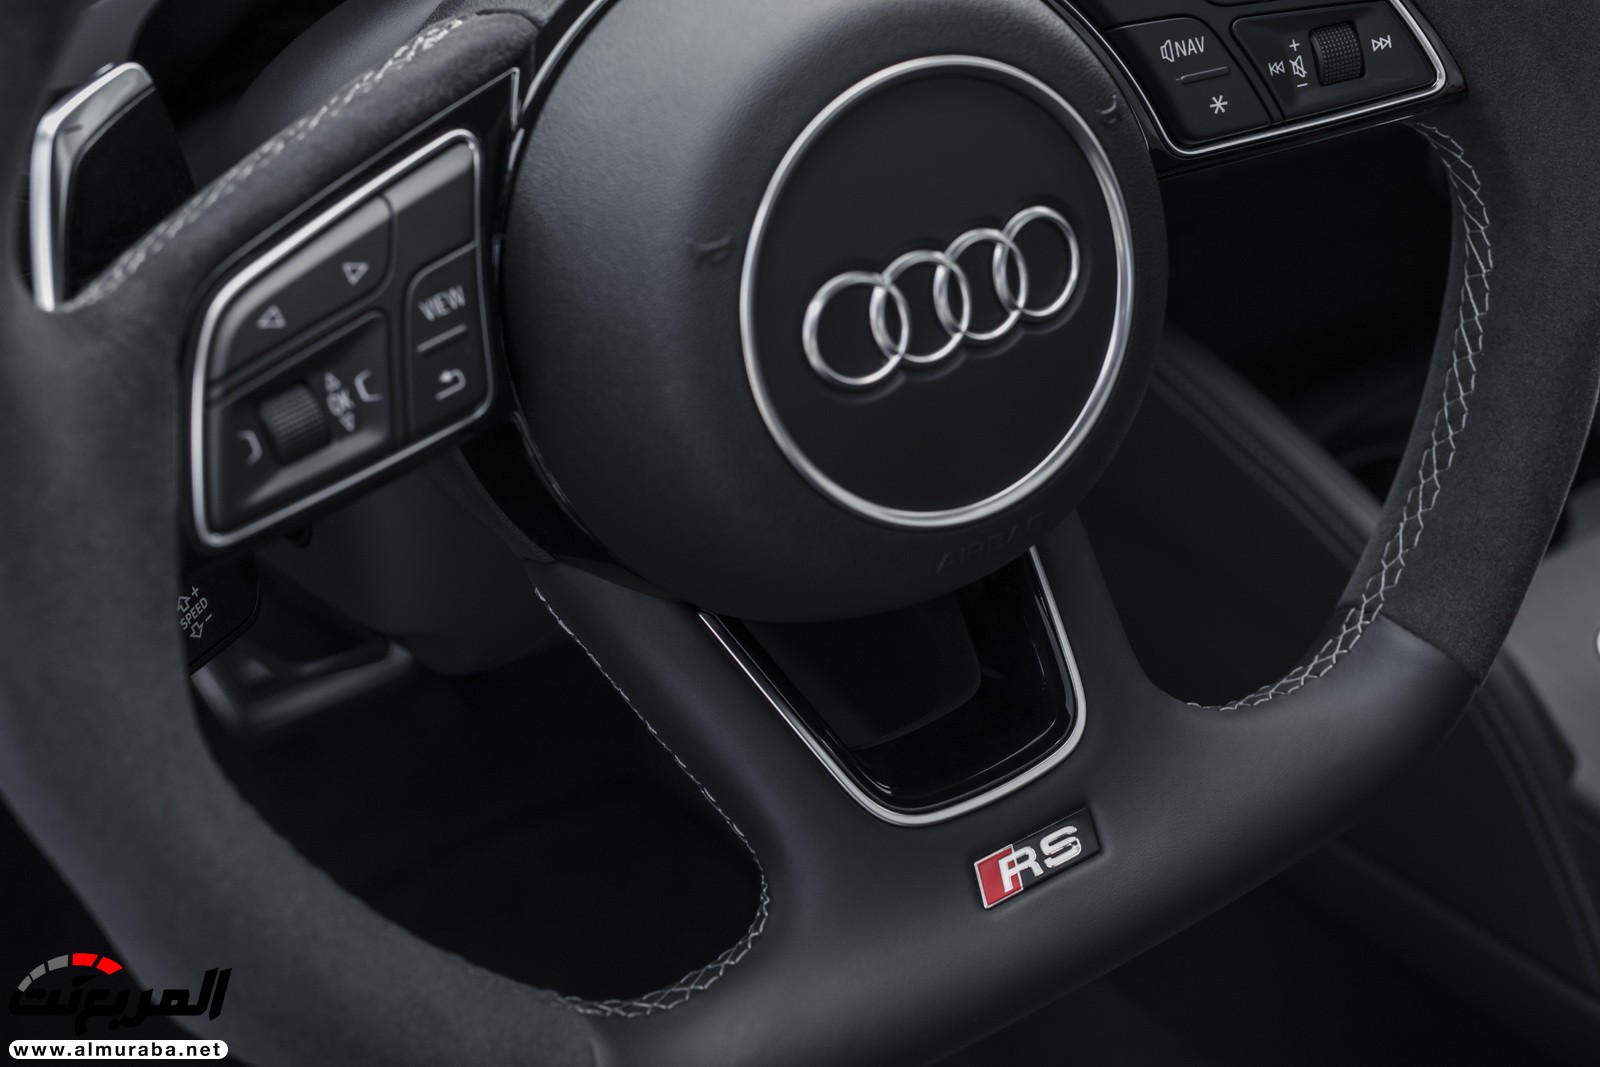 "أودي" تكشف عن RS3 الجديدة كليا 2018 بقوة 395 حصان Audi 67